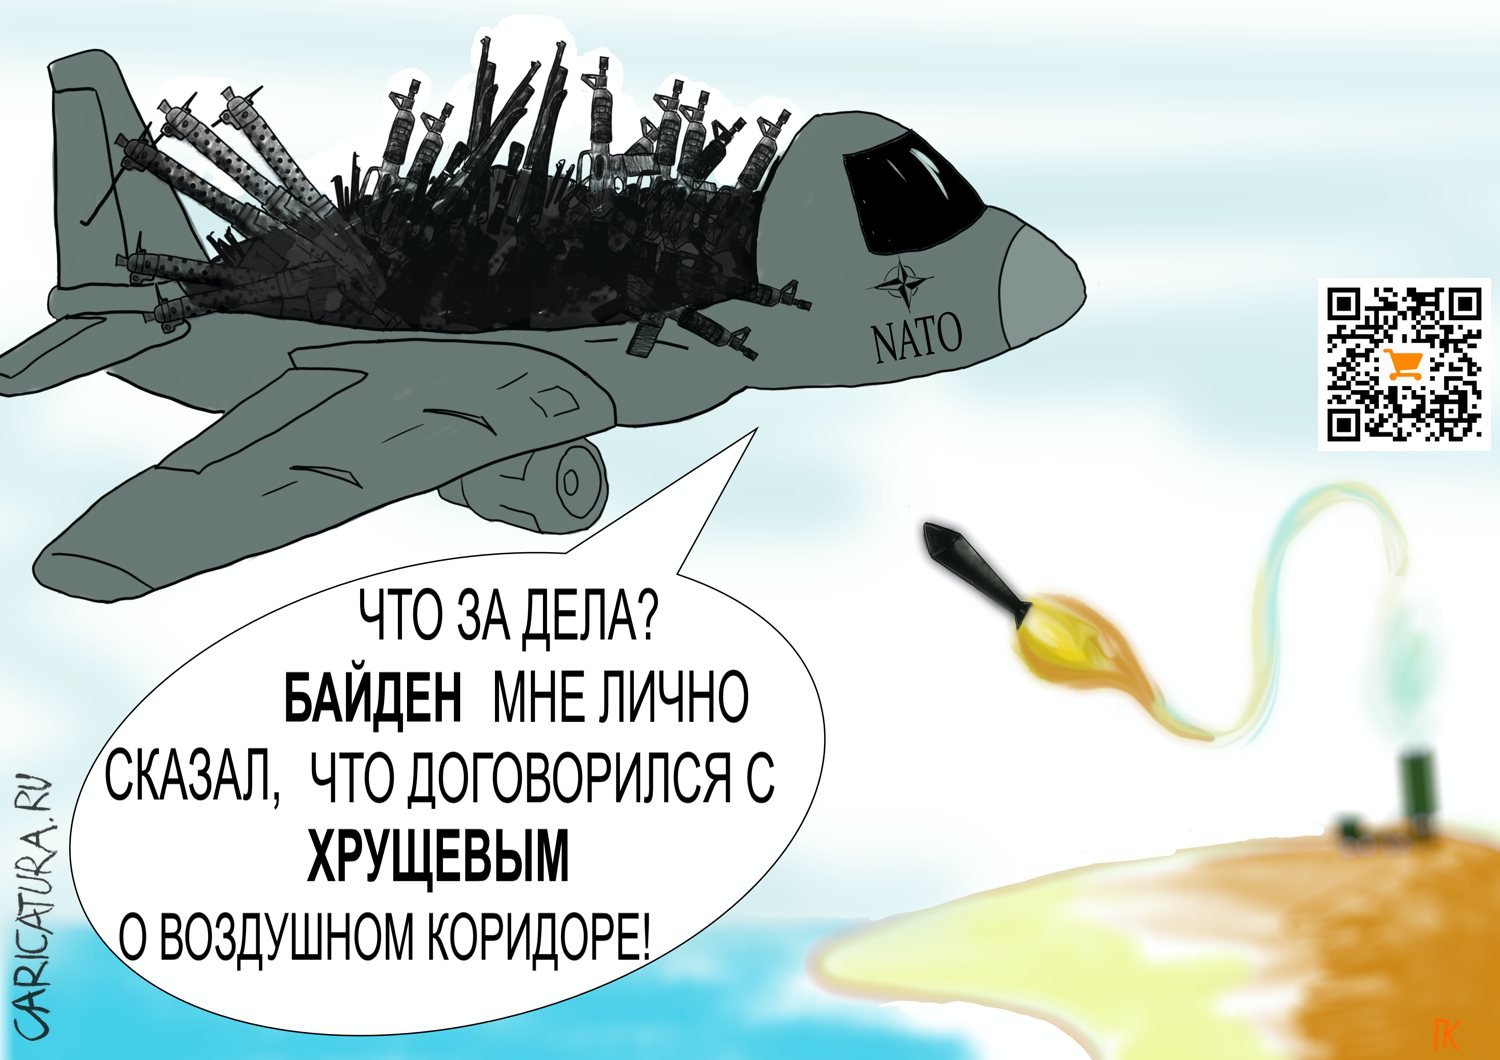 Карикатура "Дедушка перепутал", Константин Погодаев